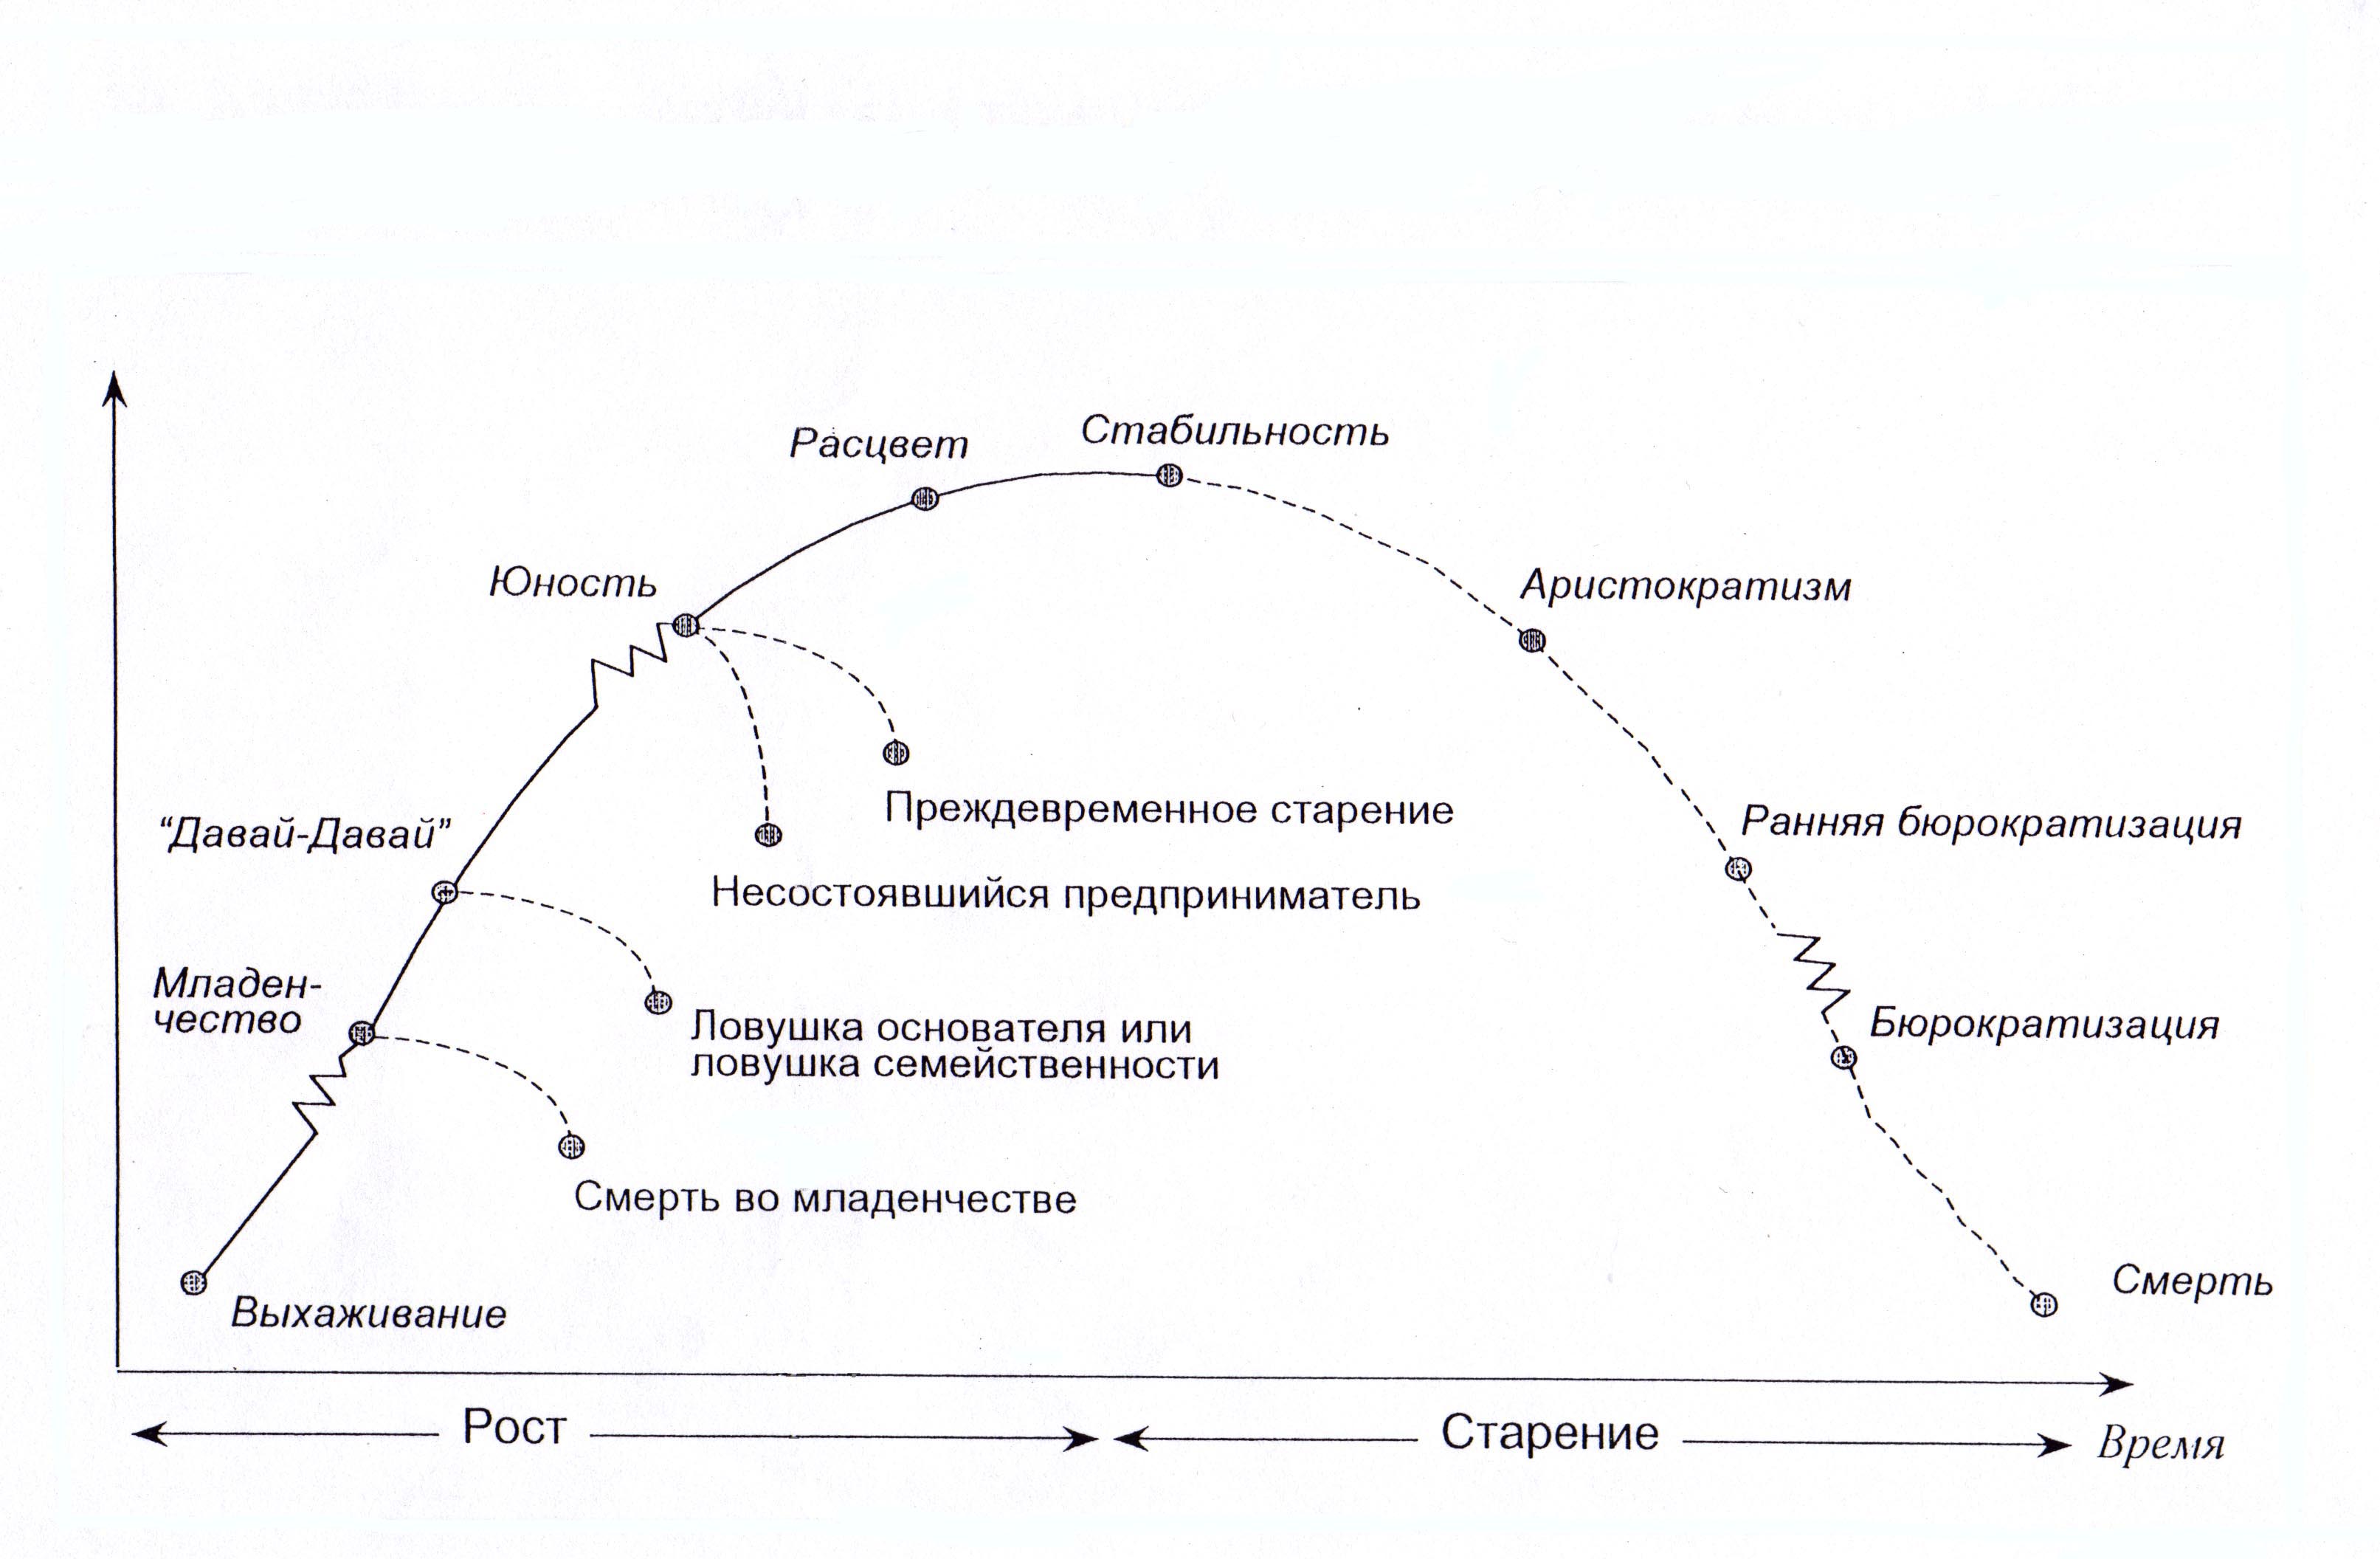 Организация ее жизненный цикл. Ицхак Адизес модель жизненного цикла. Модель жизненного цикла организации Ицхака Адизеса. Ицхак Адизес жизненный цикл организации. Теория жизненного цикла организации по Адизесу.